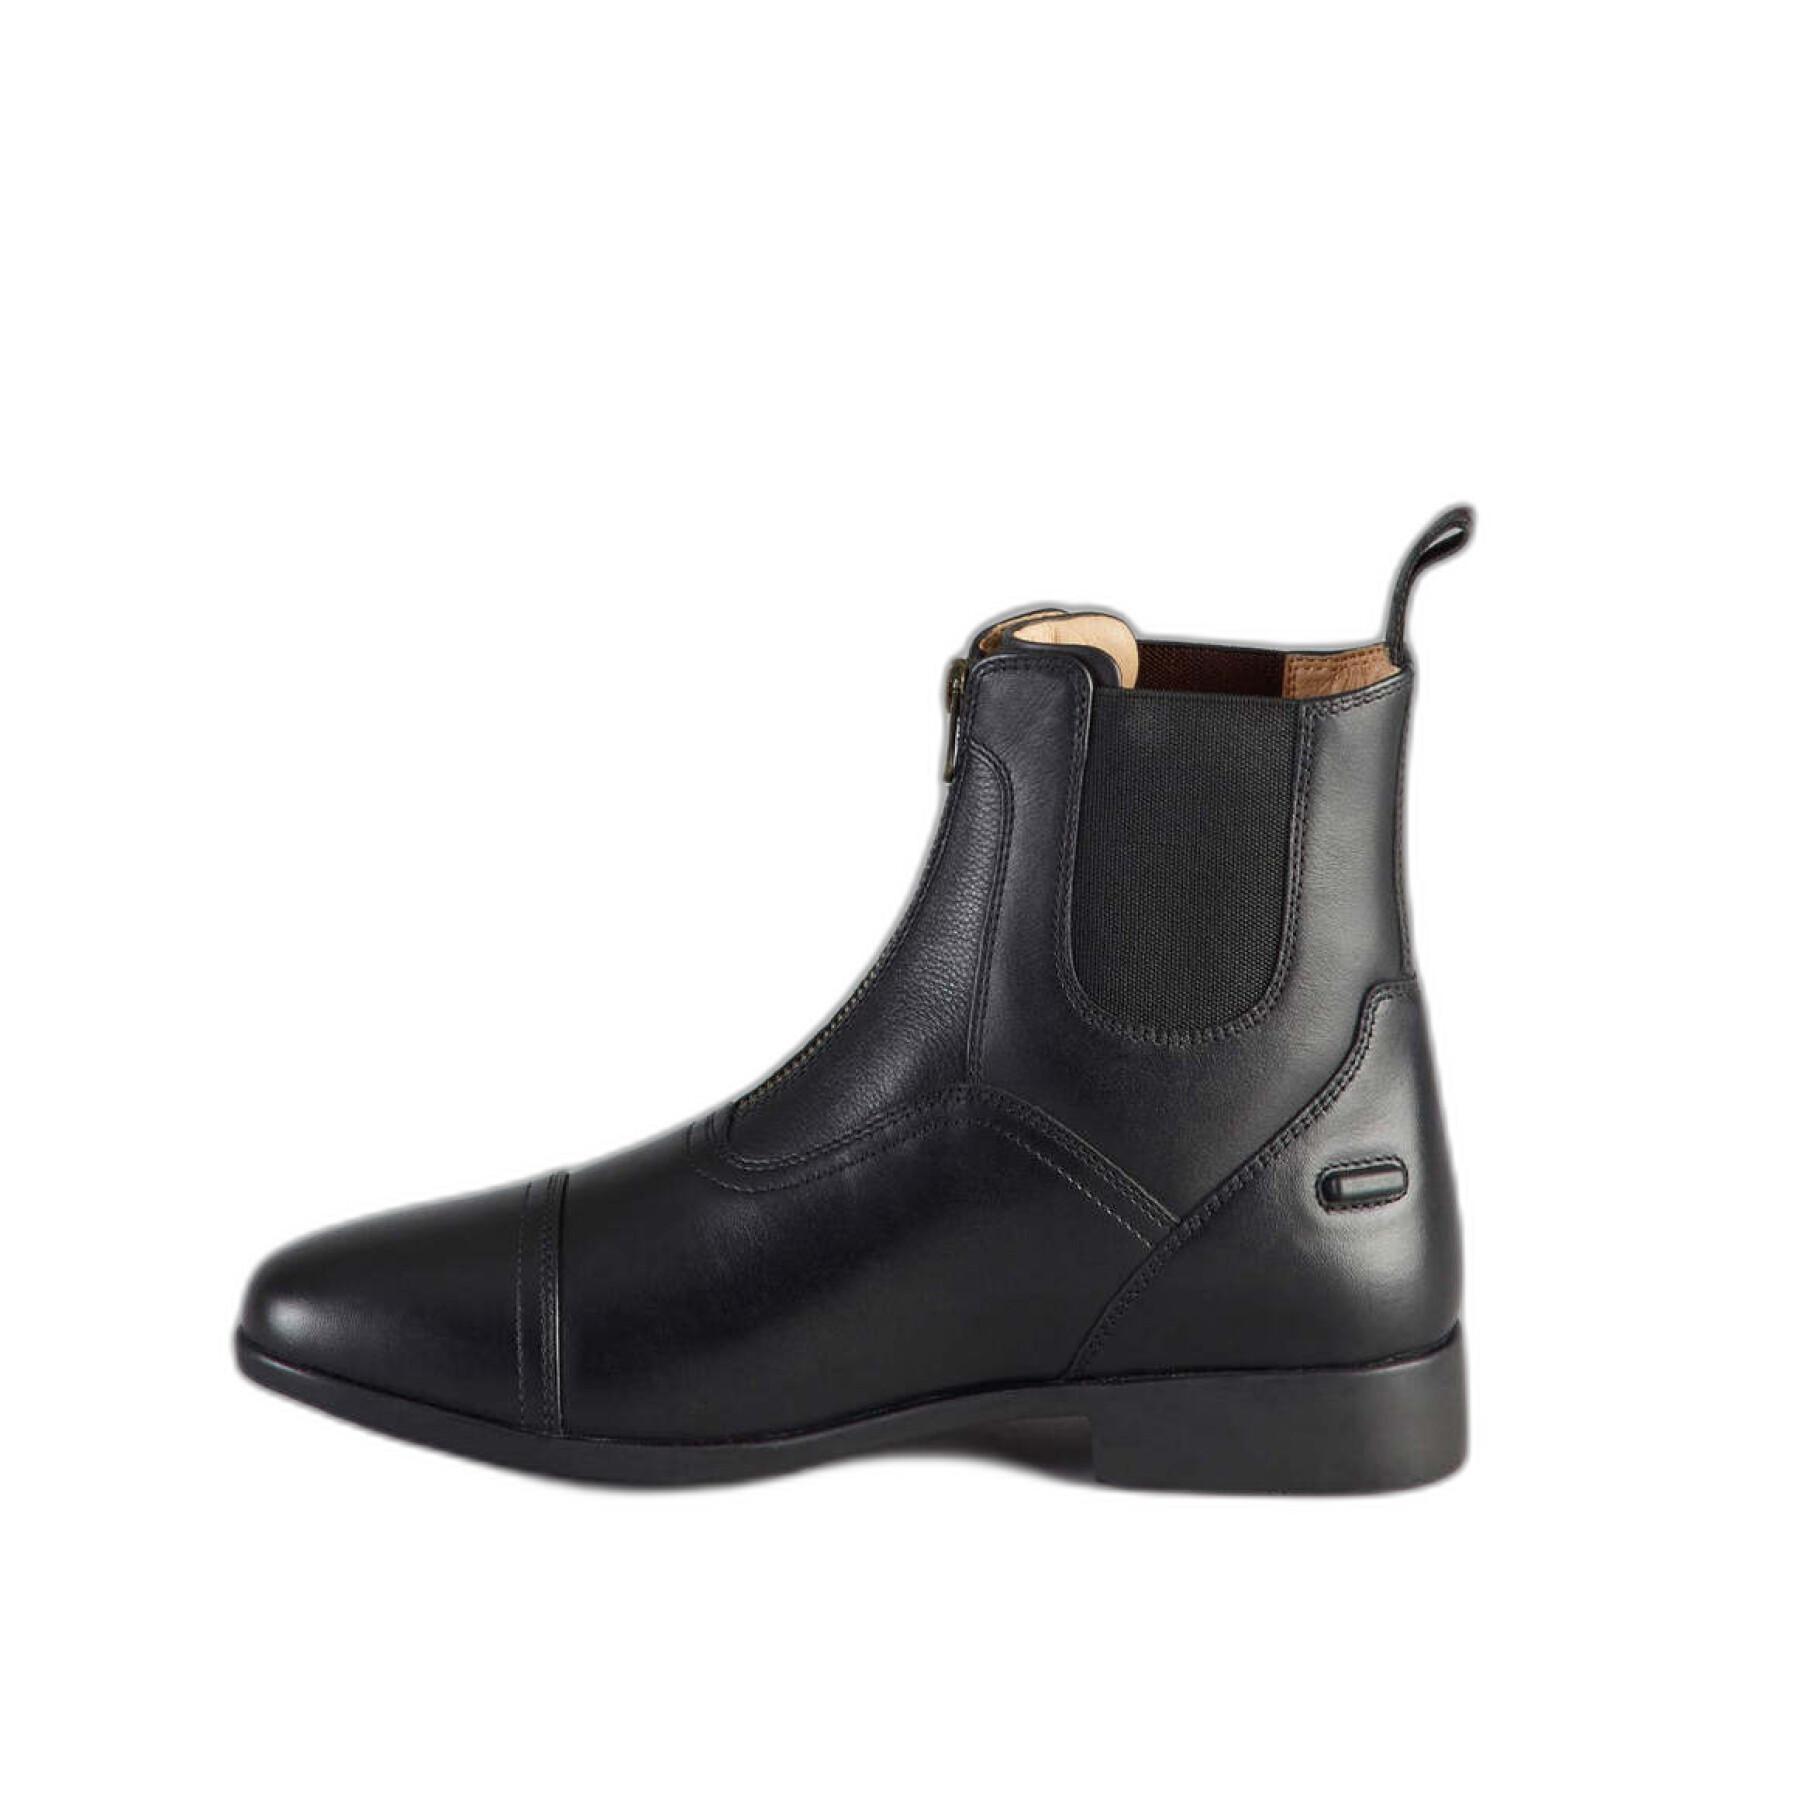 Boots leather riding shoes Premier Equine Virtus